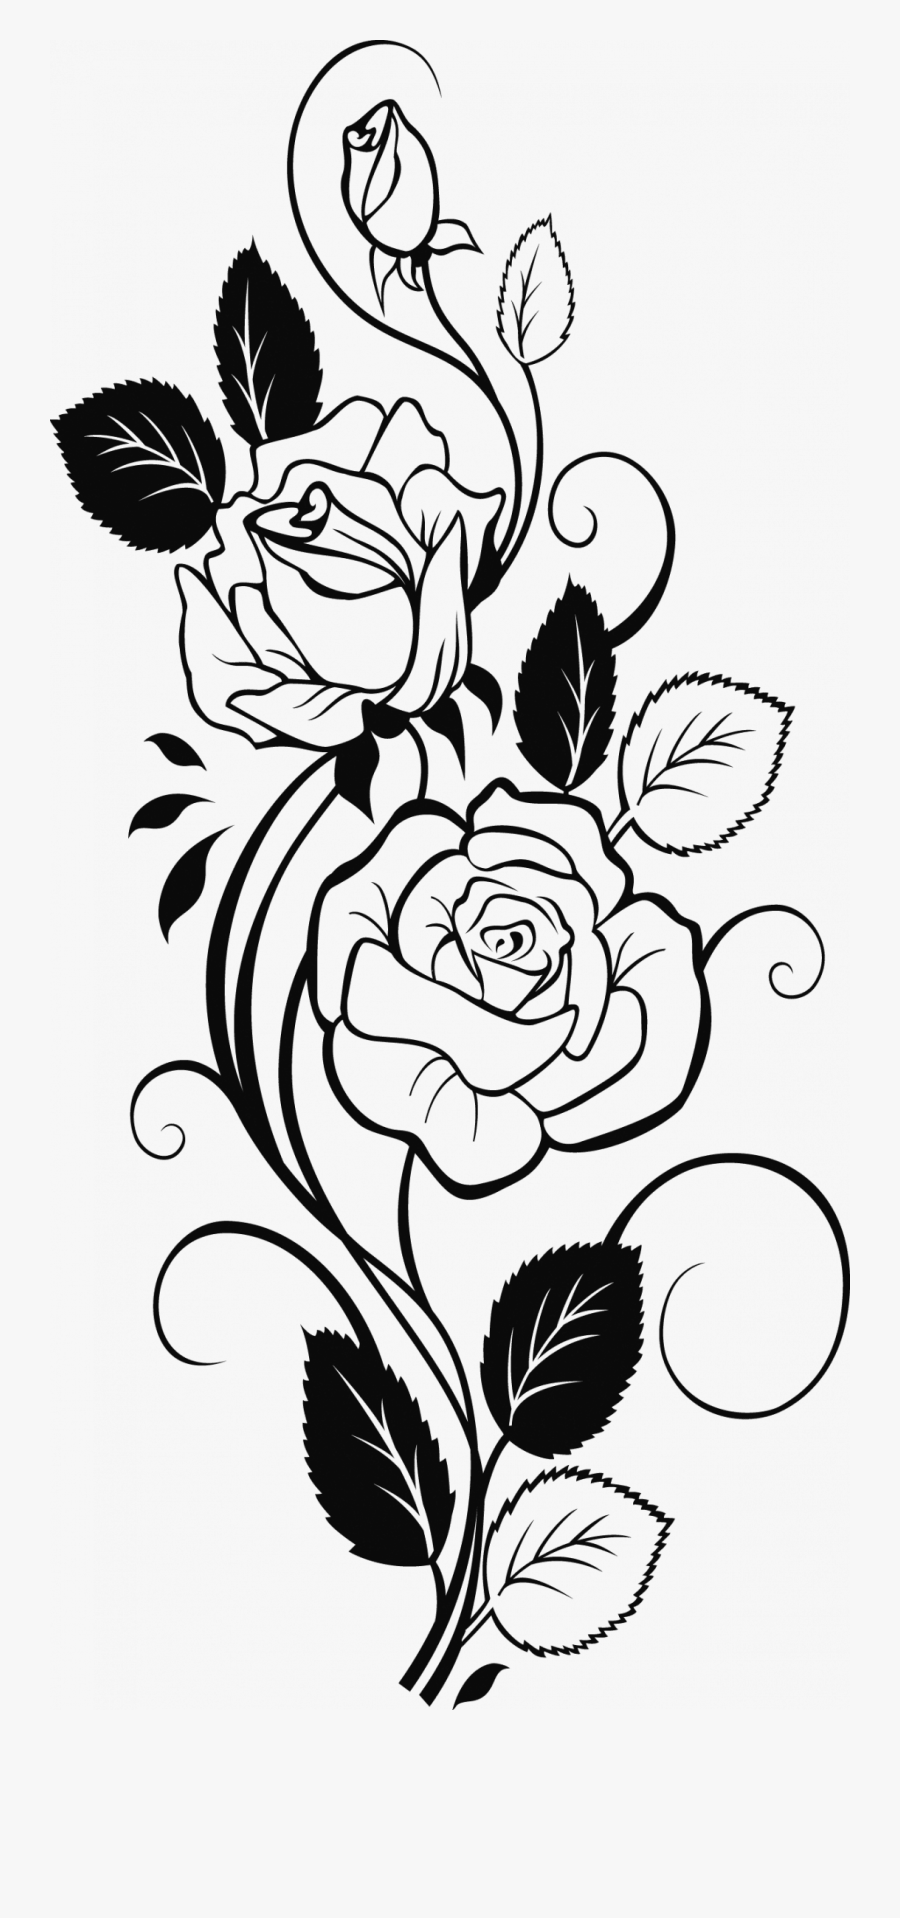 Rose Flower Sketch Designs, Transparent Clipart